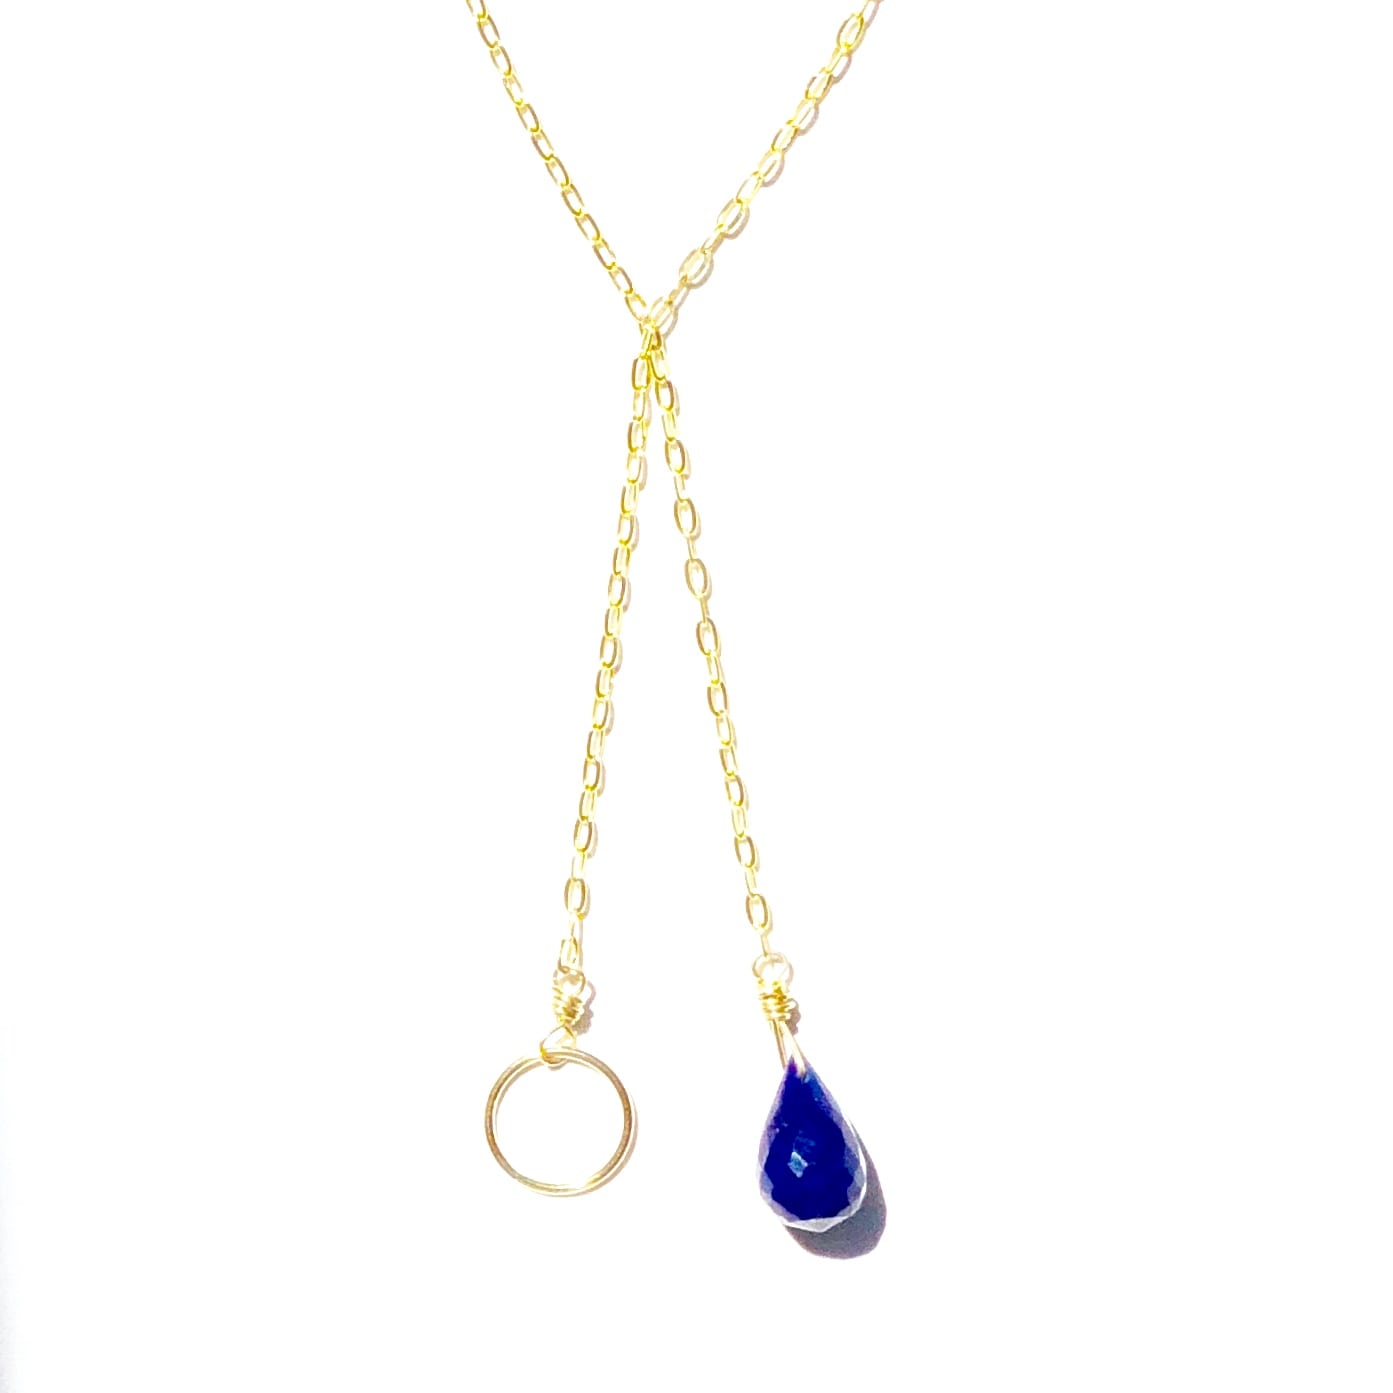 Indy & Noa Lapis Lazuli & Circle of Life necklace